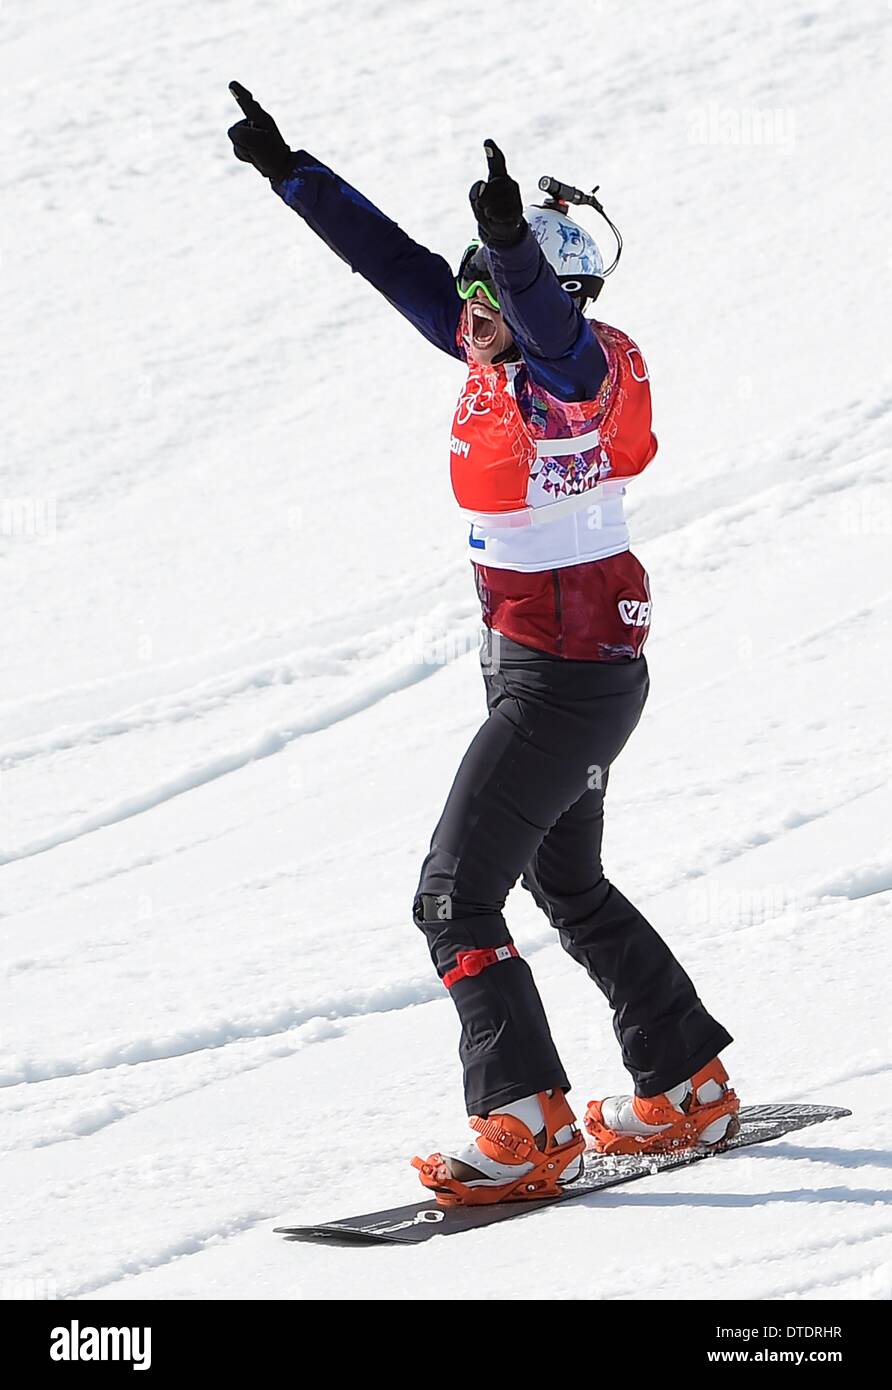 Eva Samkova (CZE) feiert sie nähert sich die Ziellinie um GOLD zu gewinnen. Womens Snowbboard Cross - Rosa Khutor Extreme Park - Sotschi - Russland - 16.02.2014 Stockfoto